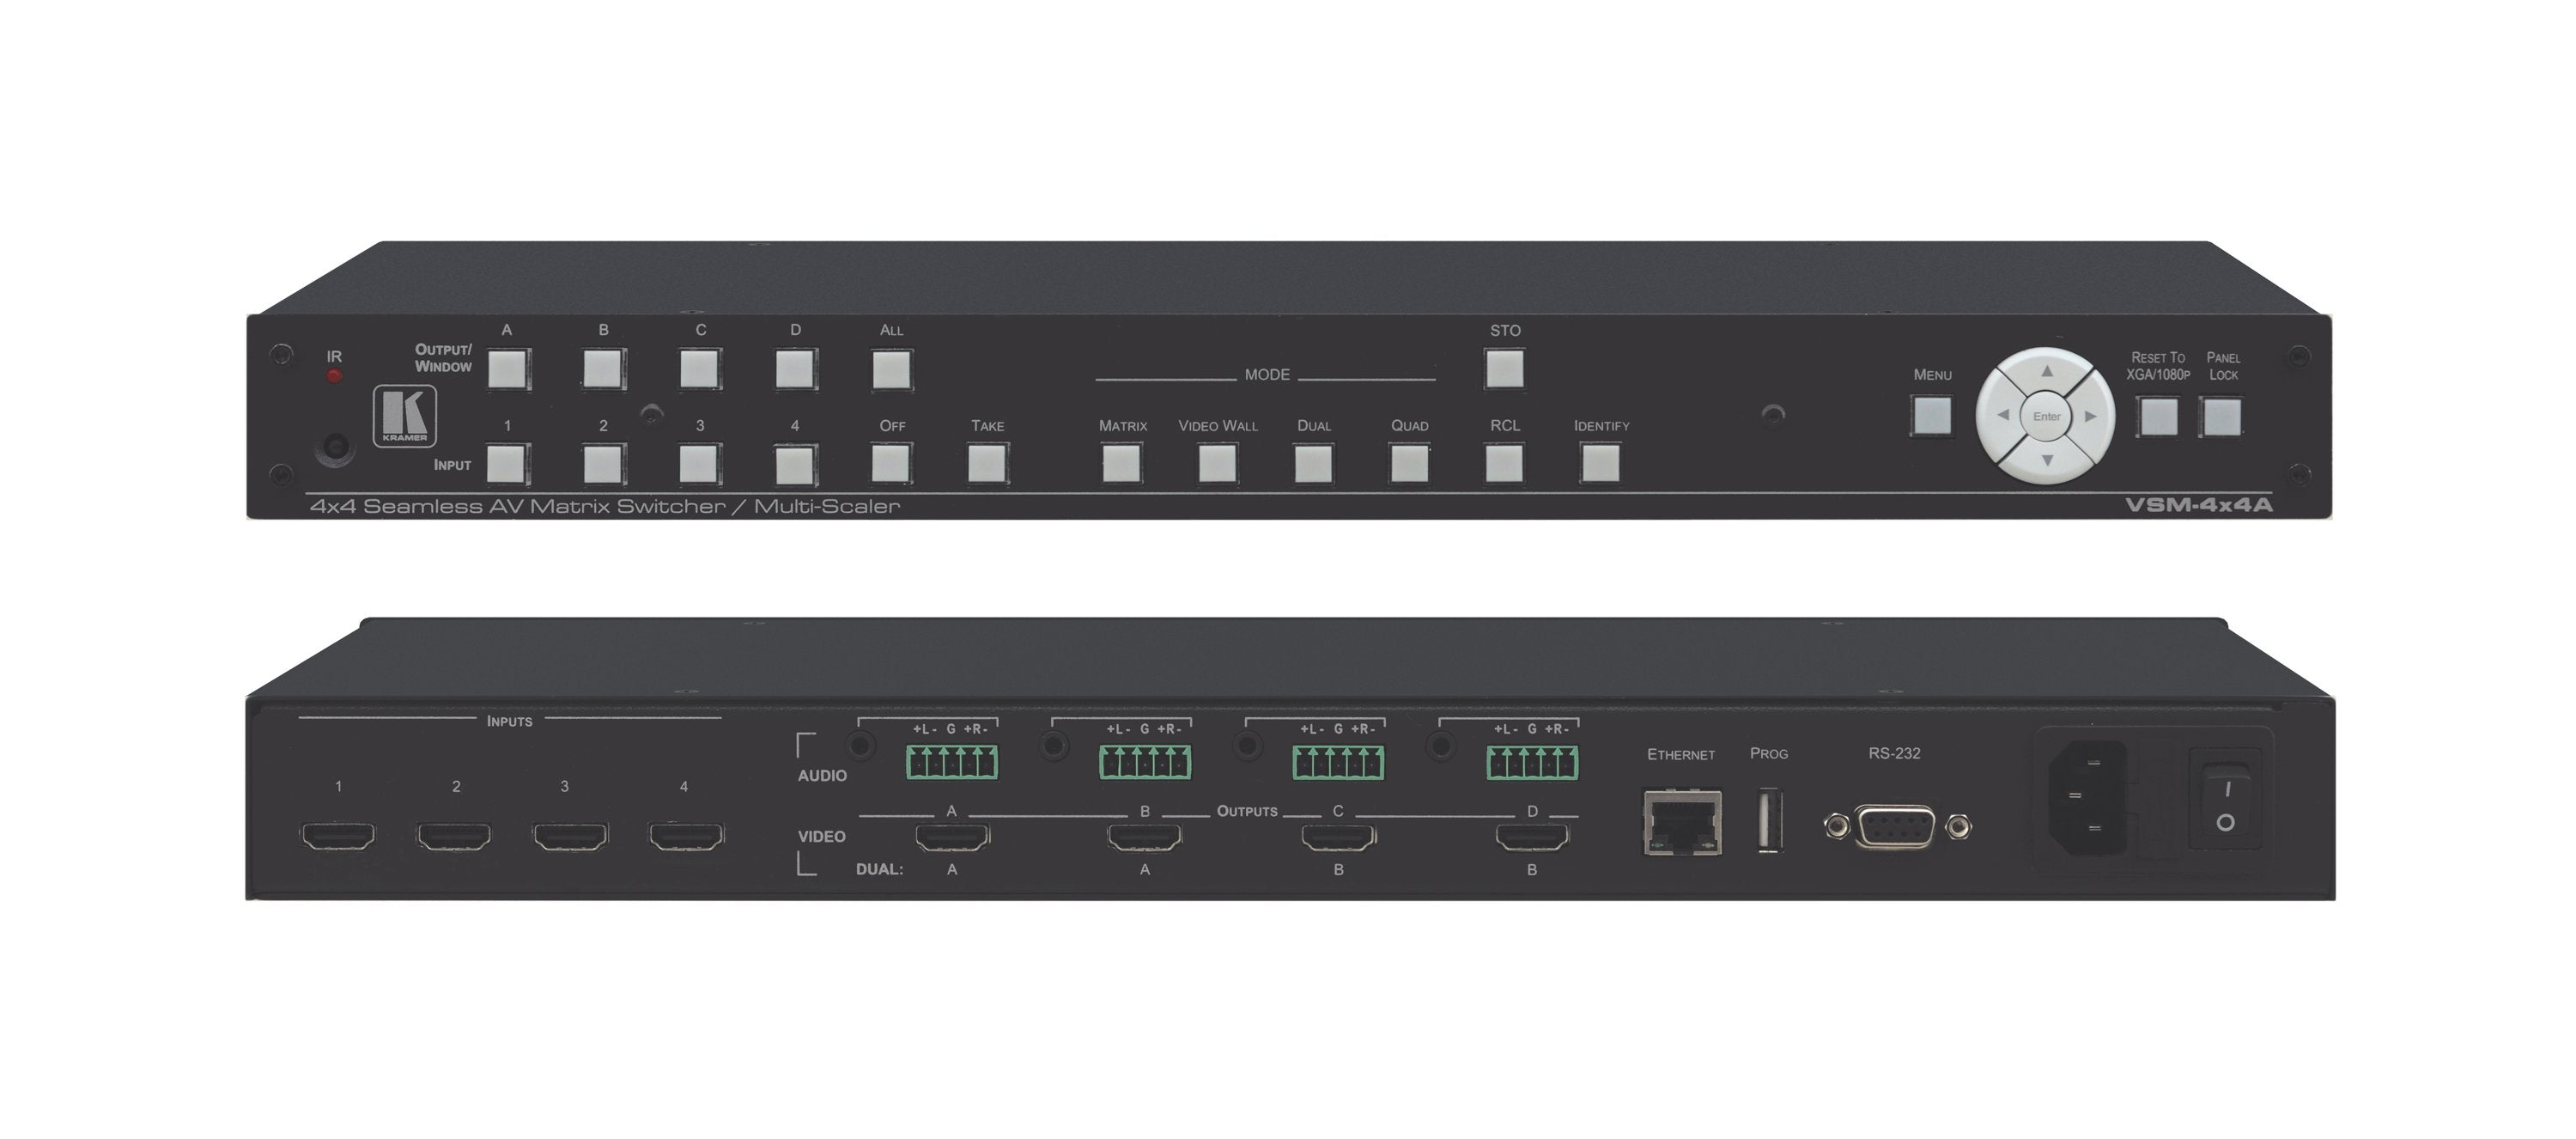 Kramer VSM-4x4A Switcher matricial de HDMI 4X4 con escalador y cambio sin cortes, Modos Videowall, Quad y Dual Resolución WUXGA/1080p Salidas de Audio